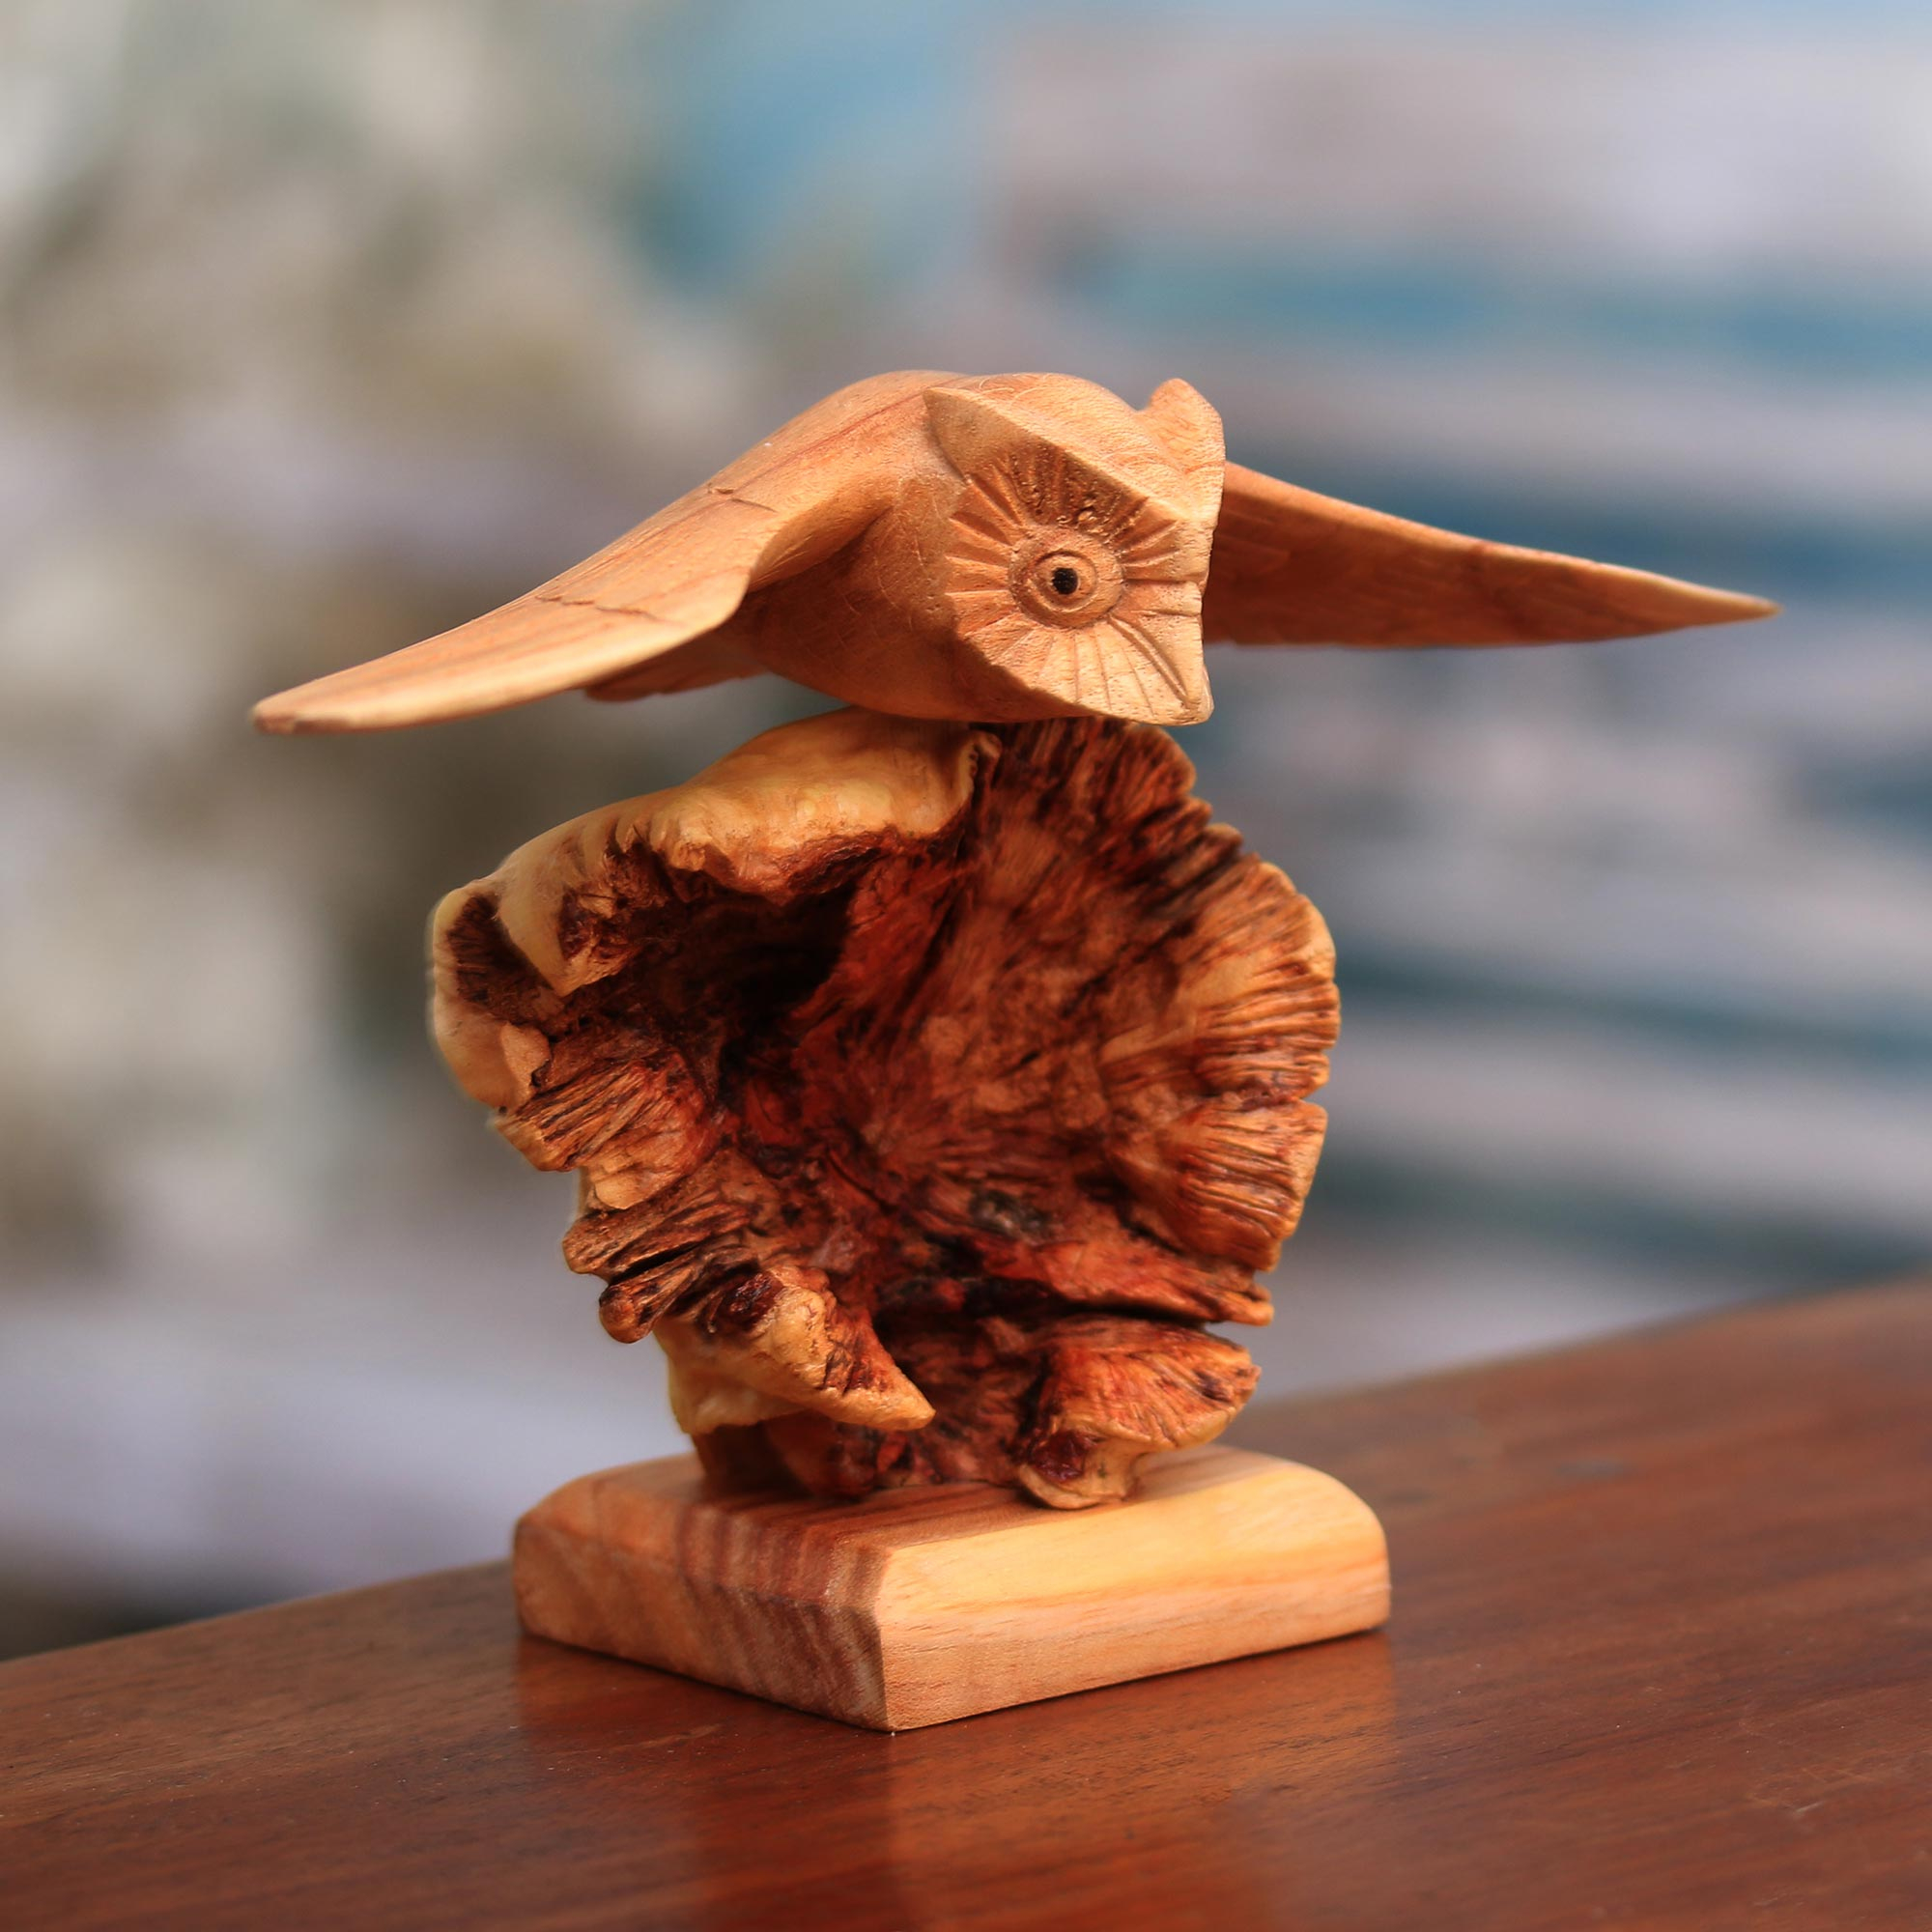 Eulenskulptur aus Holz von einem balinesischen Künstler – Fliegende Eule